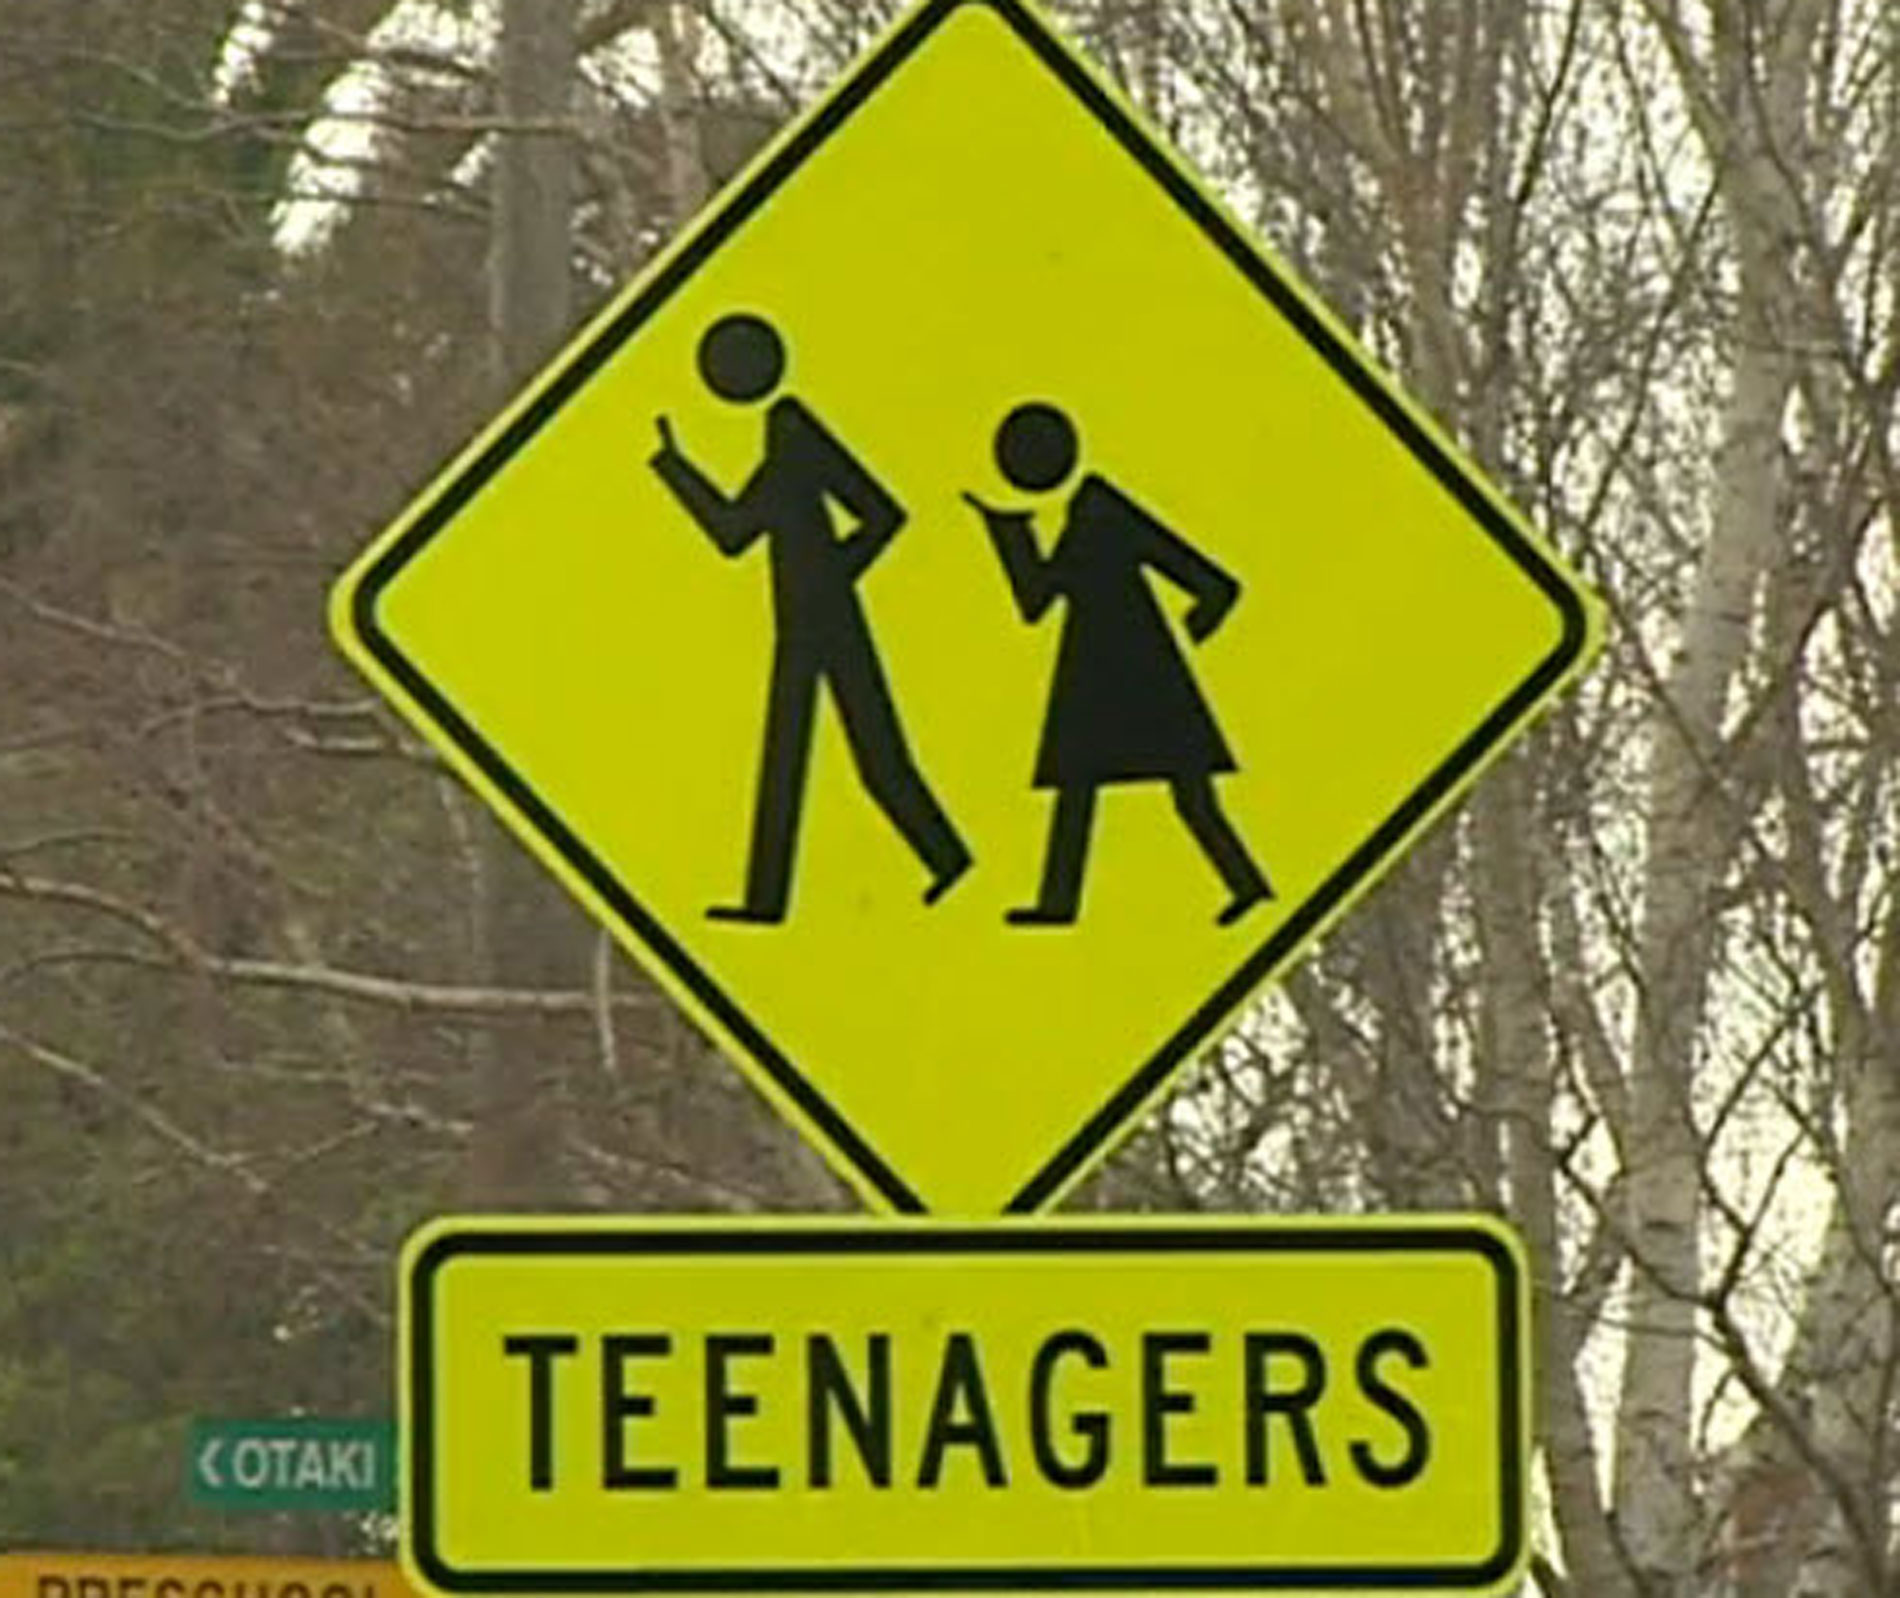 Teenagers crossing